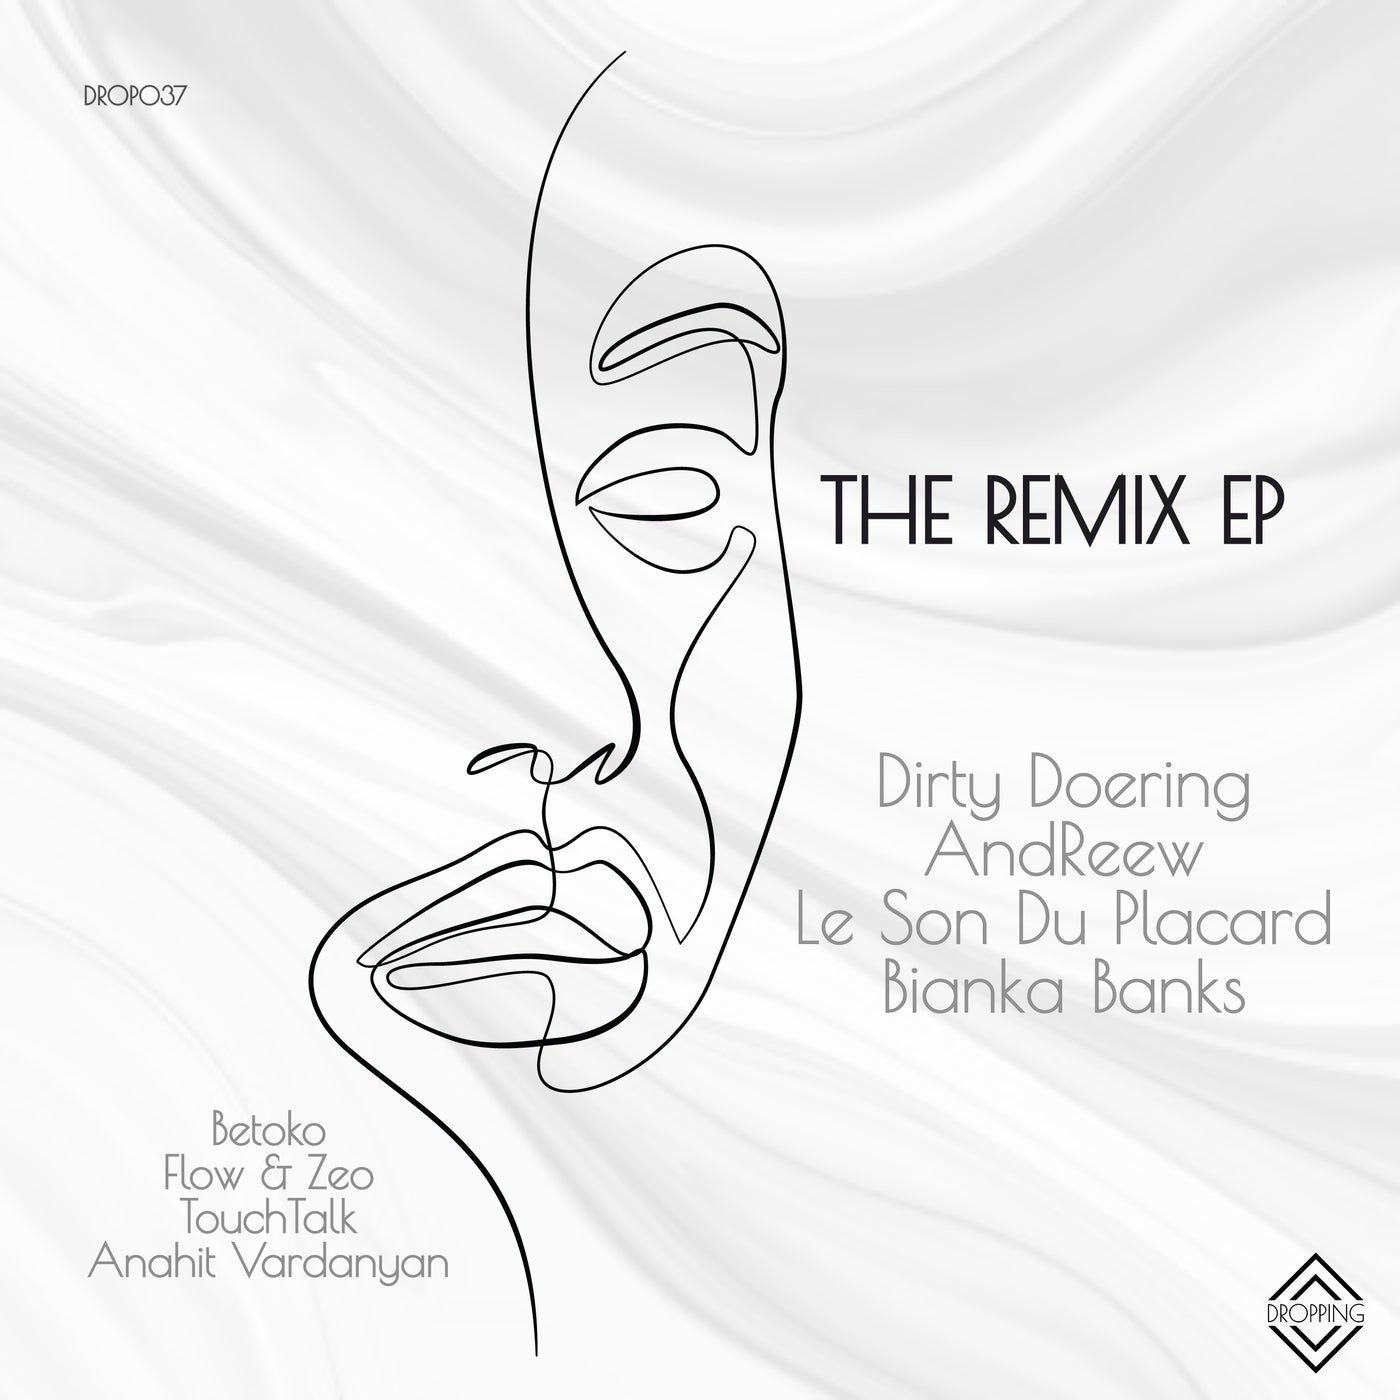 image cover: VA - The Remix / DROP037